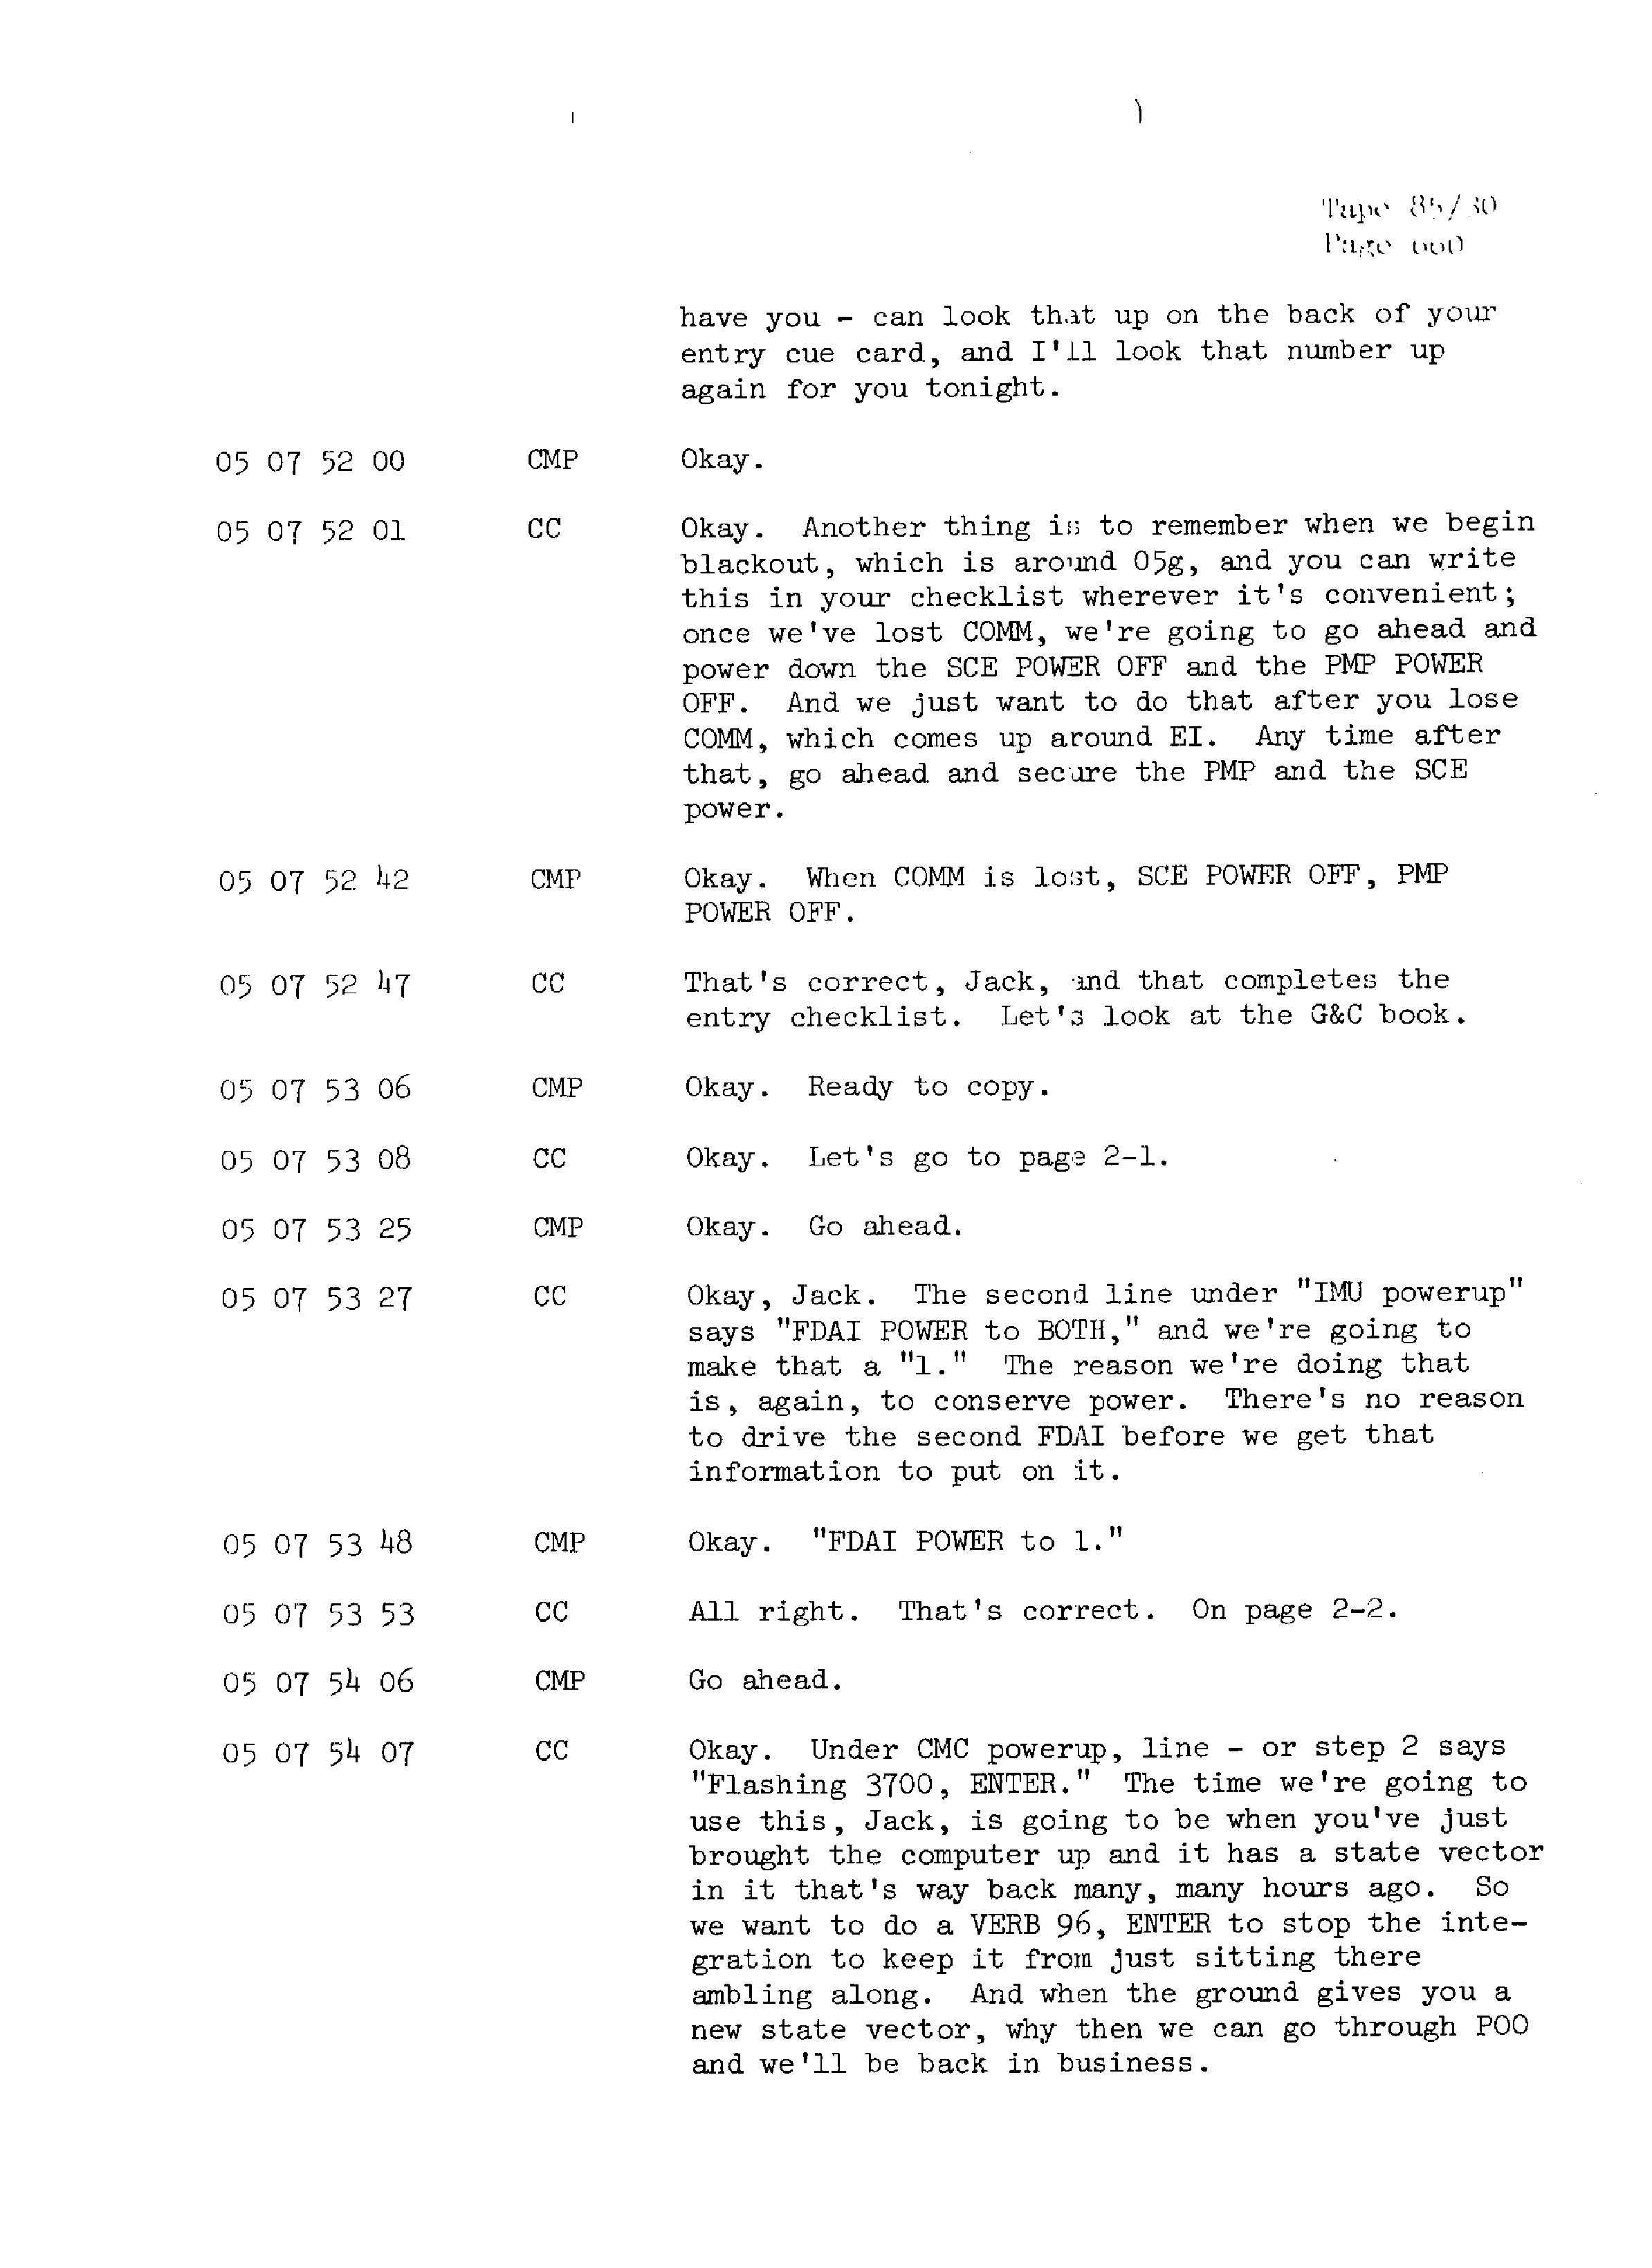 Page 667 of Apollo 13’s original transcript